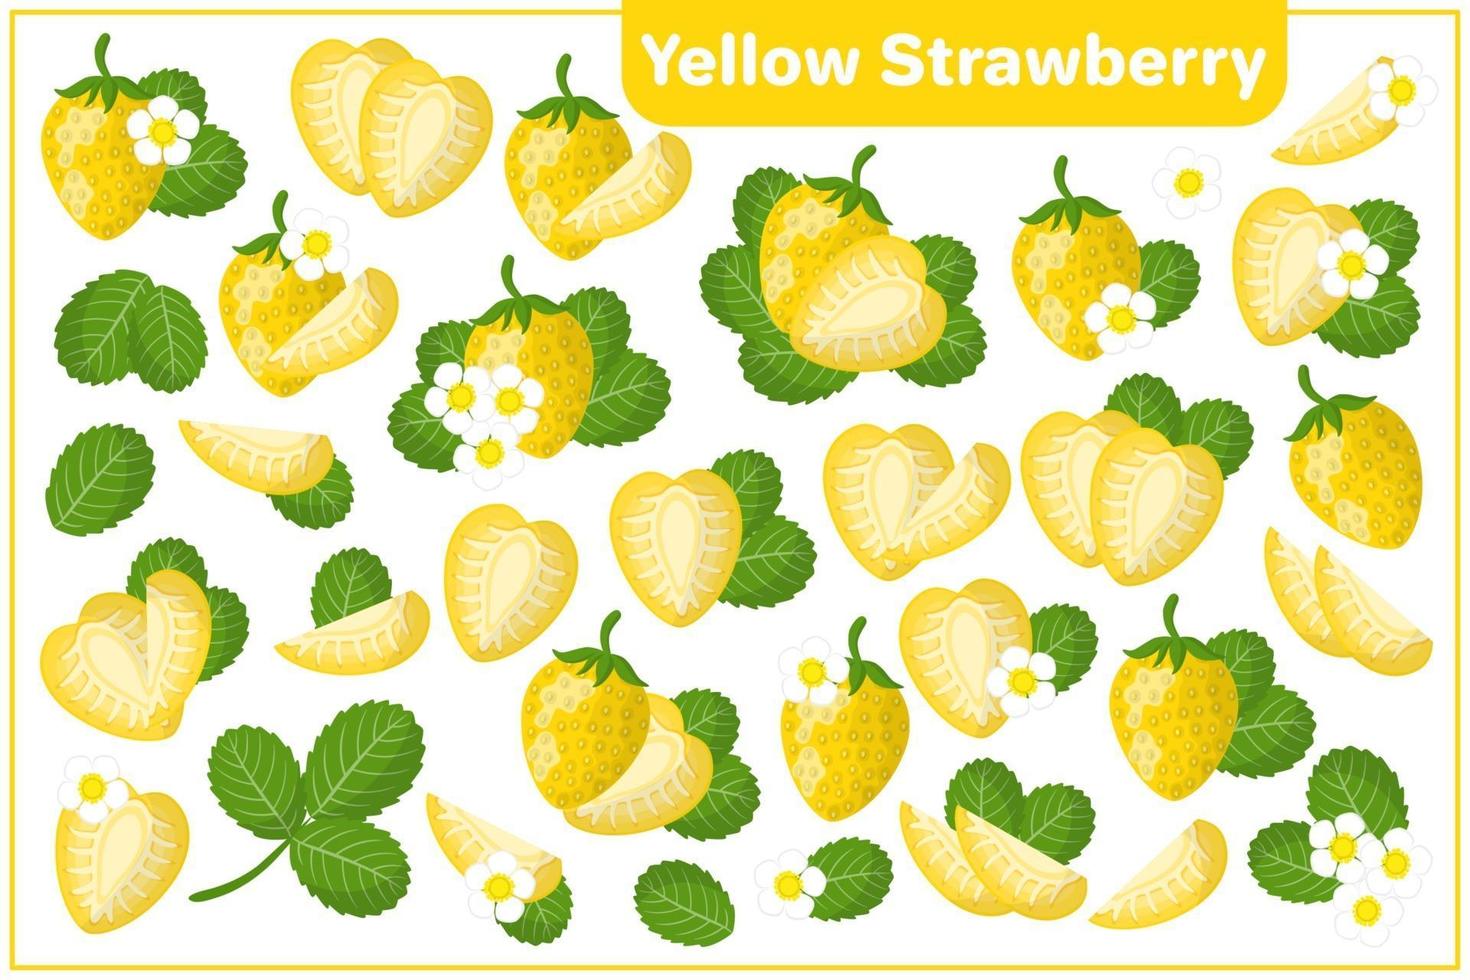 uppsättning vektor tecknad illustrationer med gula jordgubbar exotiska frukter, blommor, blad isolerad på vit bakgrund